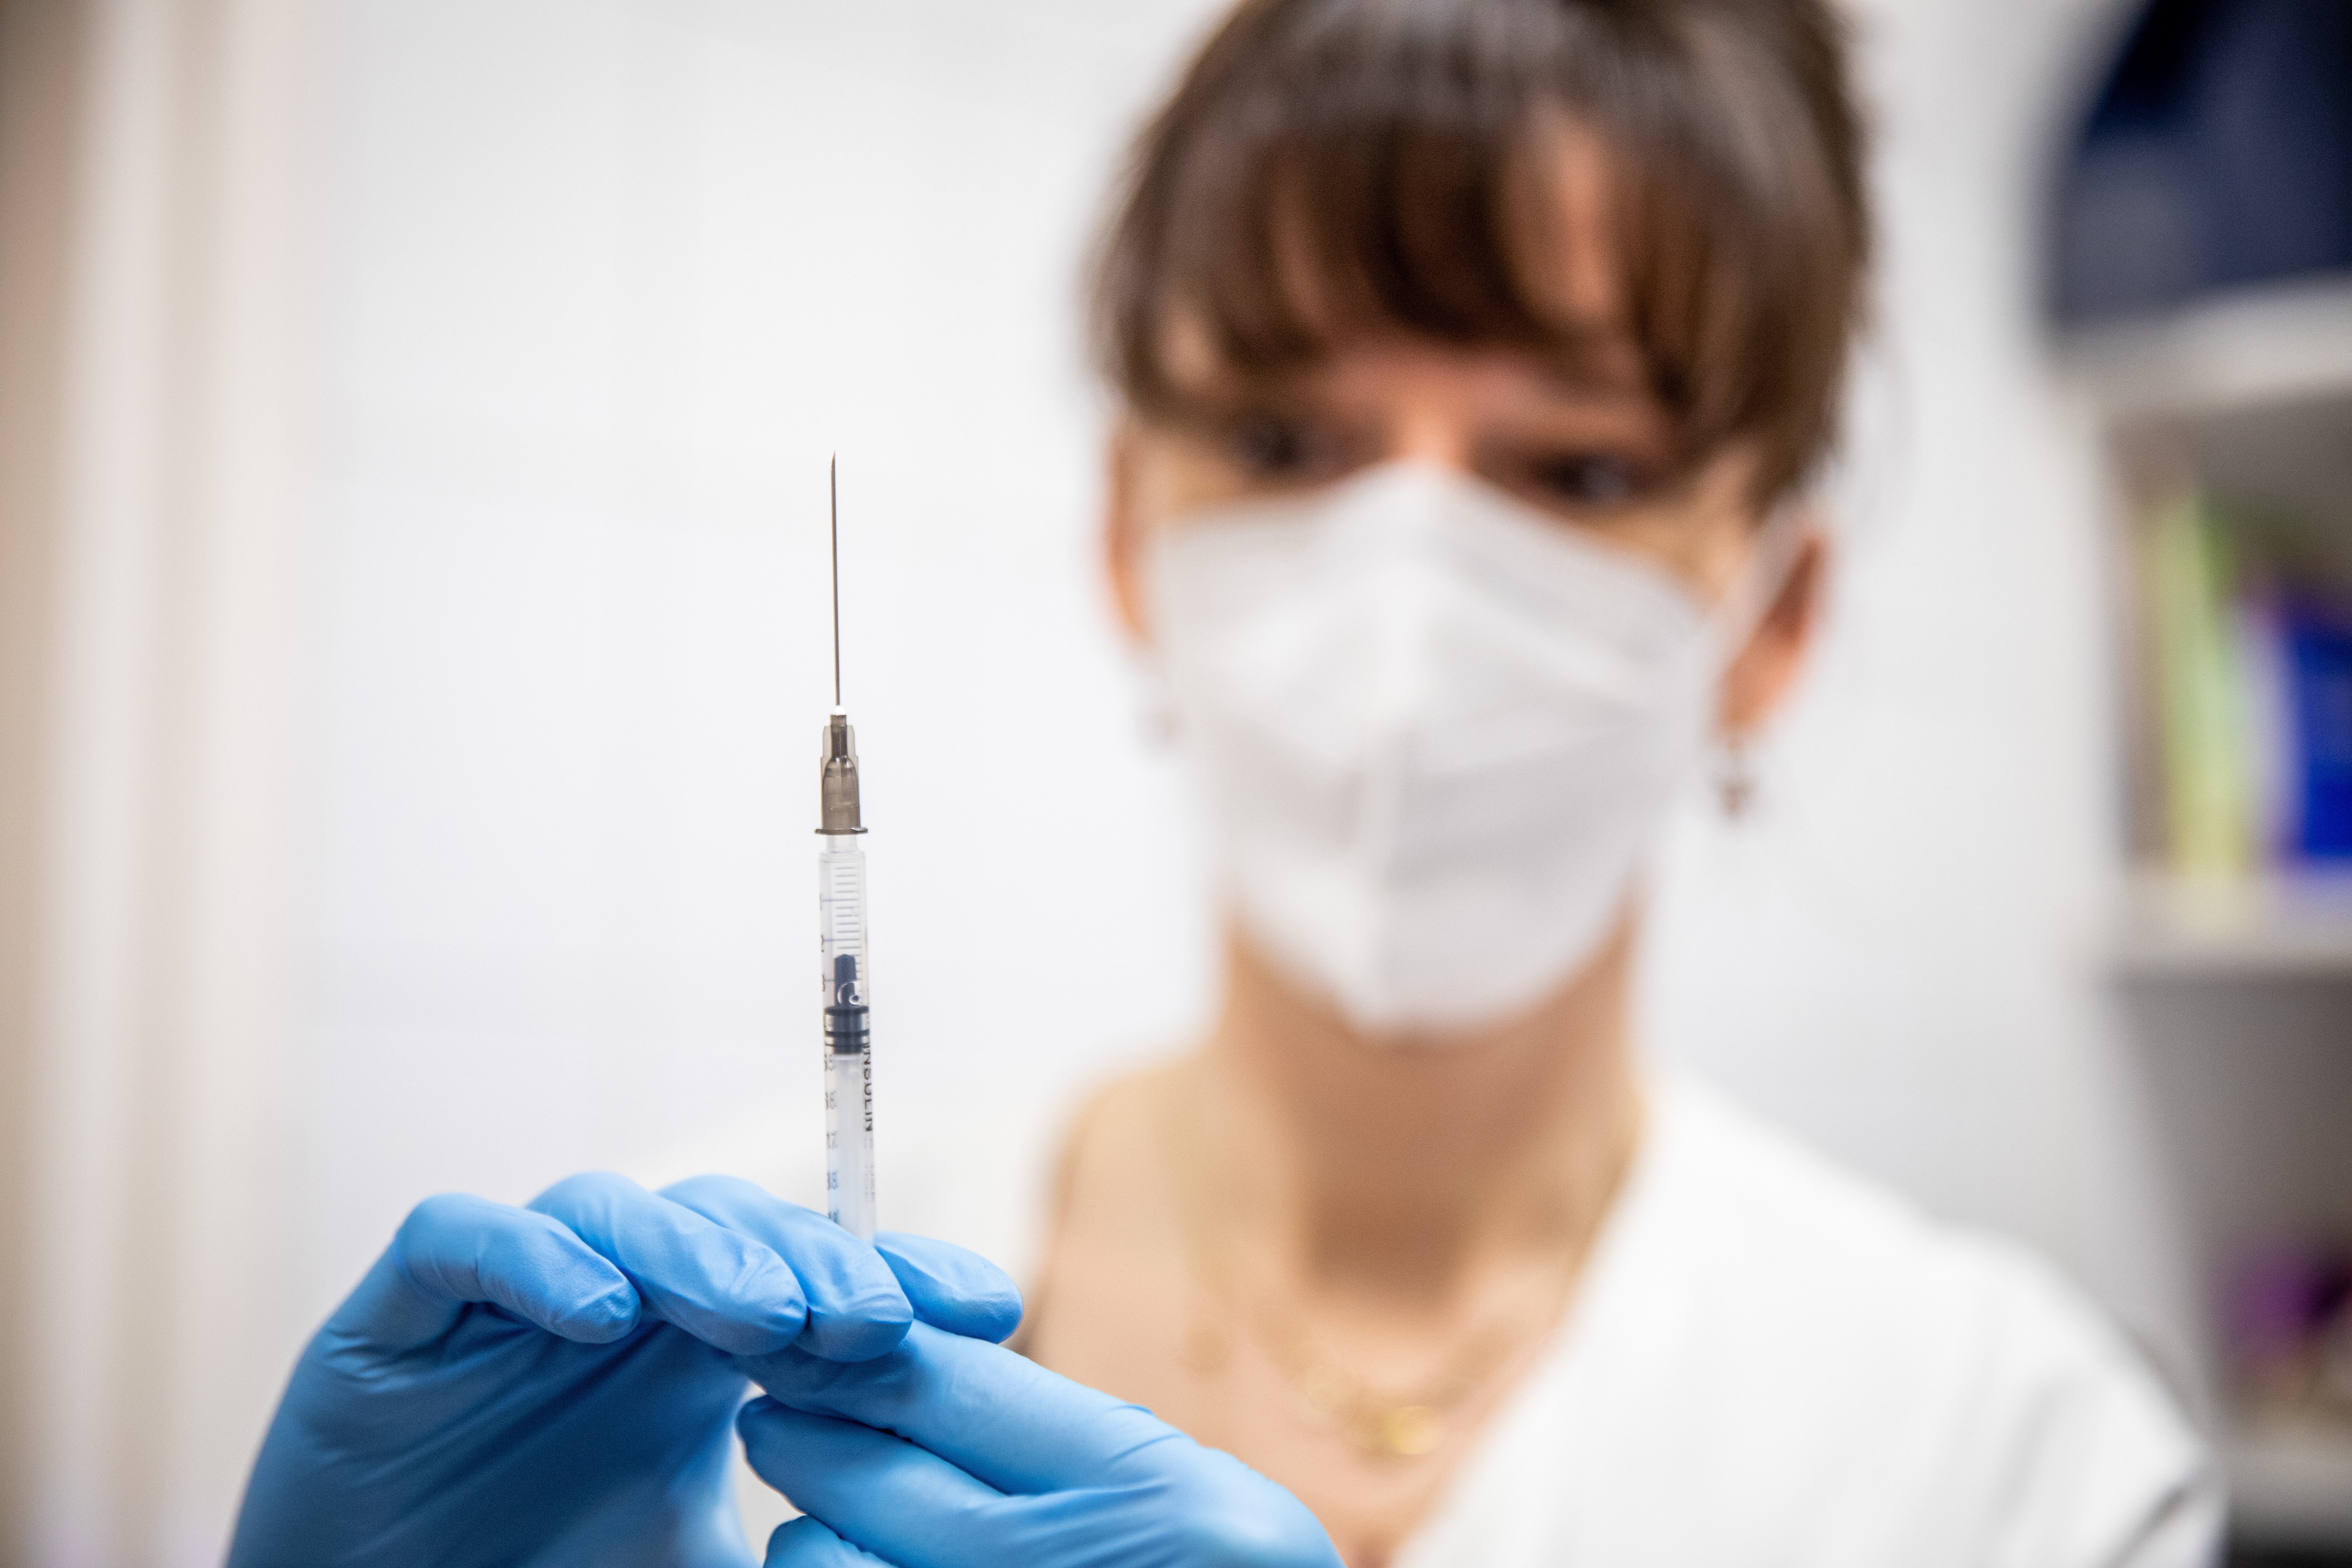 Az USA-ban már lehet oltani a serdülőket Pfizer-vakcinával